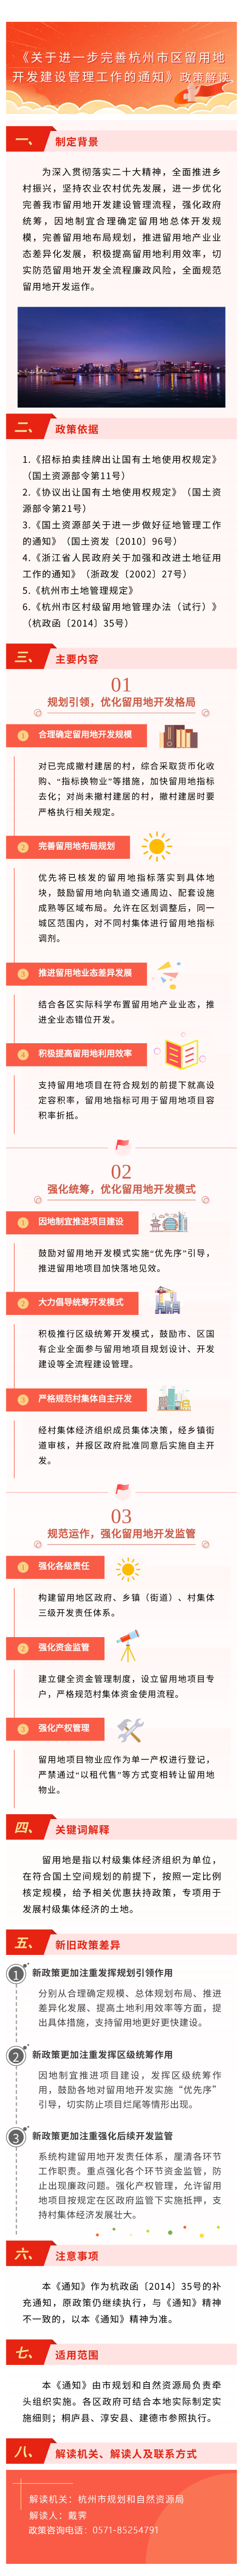 《关于进一步完善杭州市区留用地开发建设管理工作的通知》图文政策解读.PNG